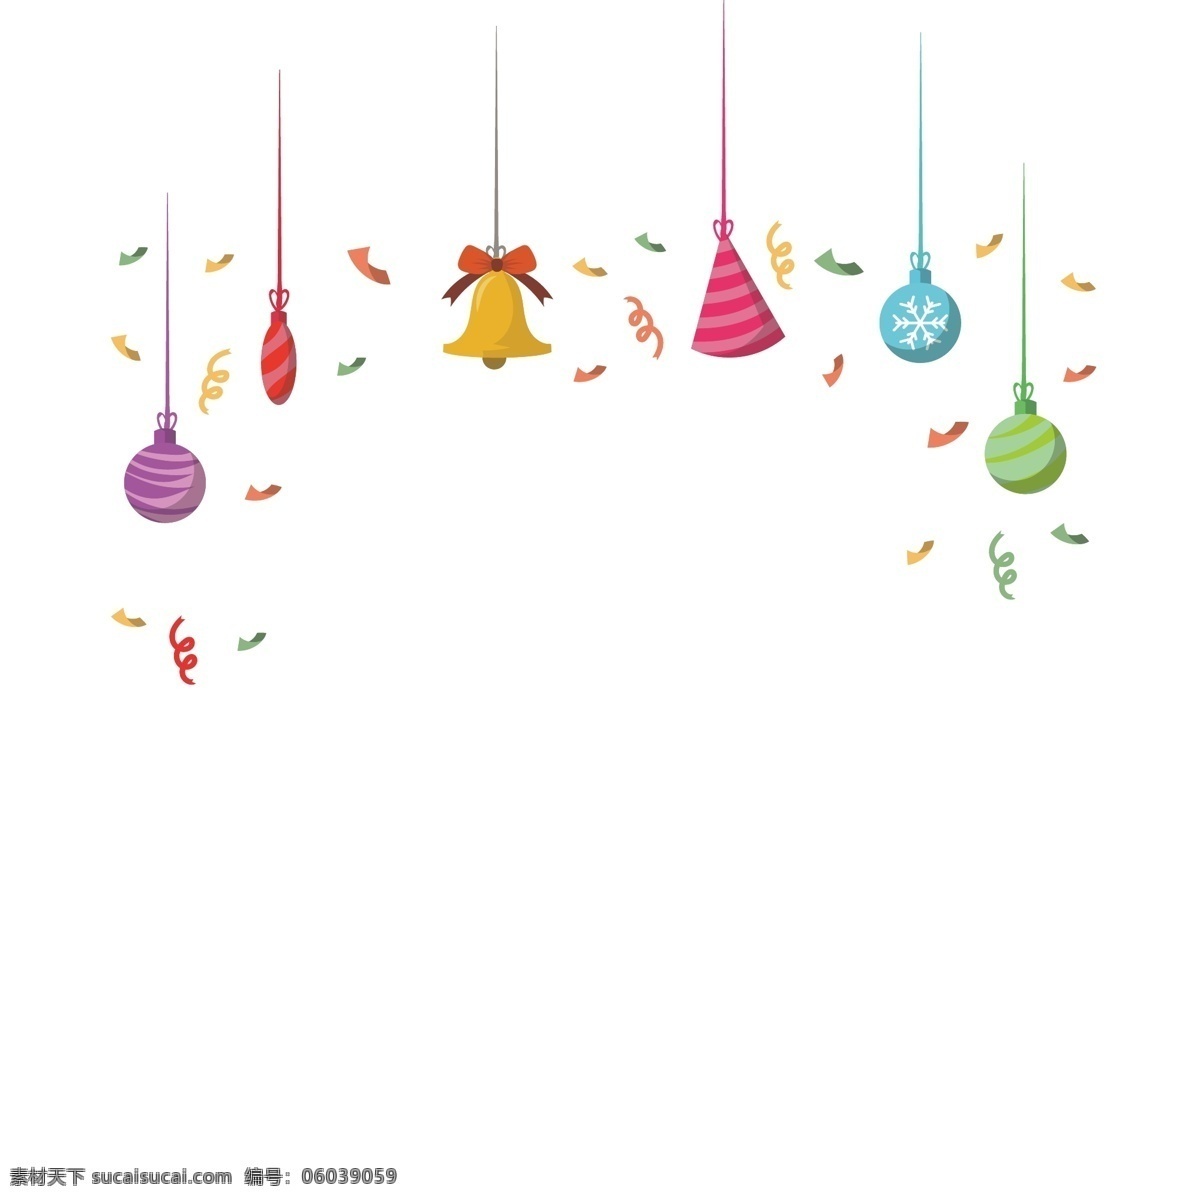 手绘 圣诞挂件 插画 圣诞挂饰 紫色球 蓝色 手绘挂饰 黄色铃铛 挂饰插画 挂饰插图